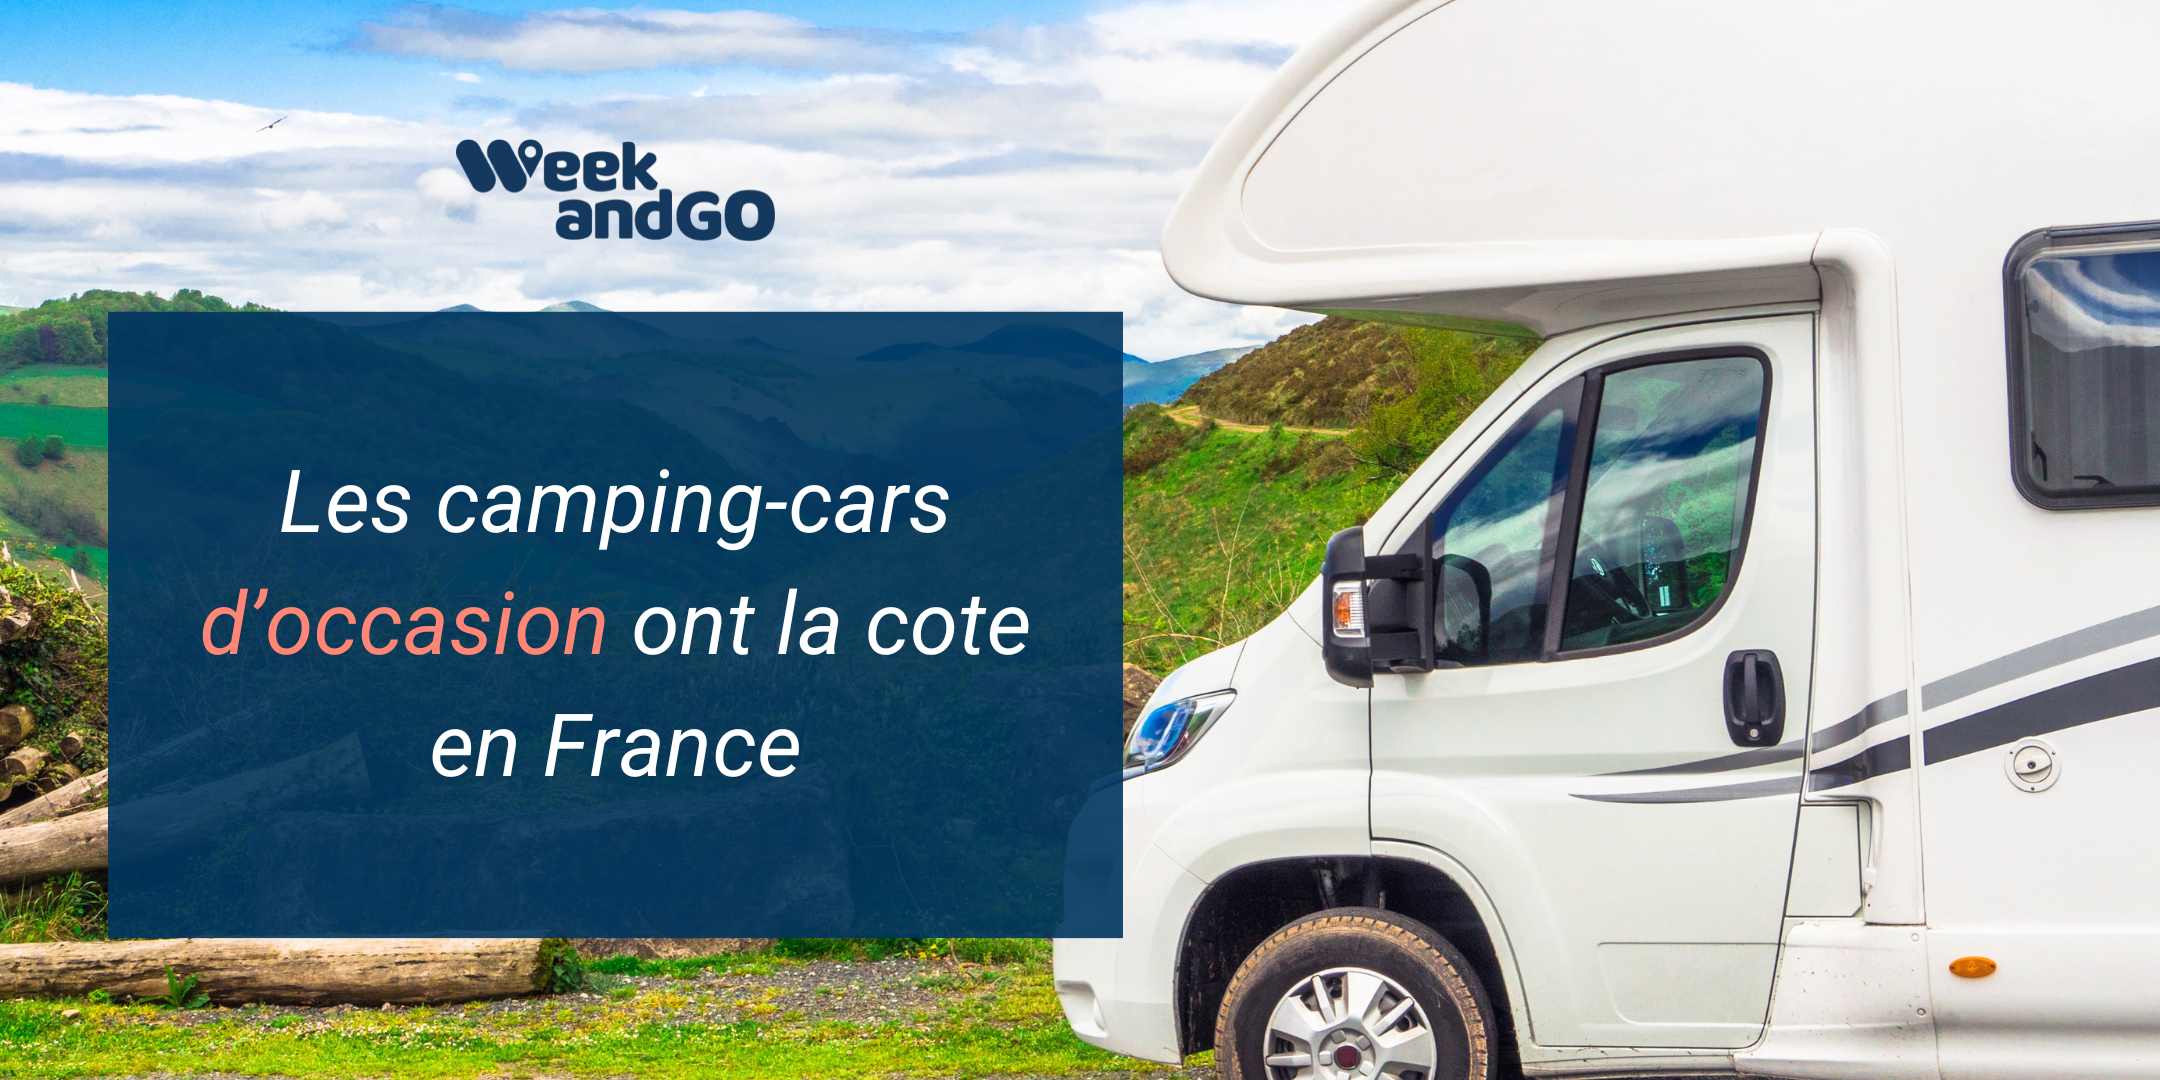 Les camping-cars d’occasion ont la cote en France